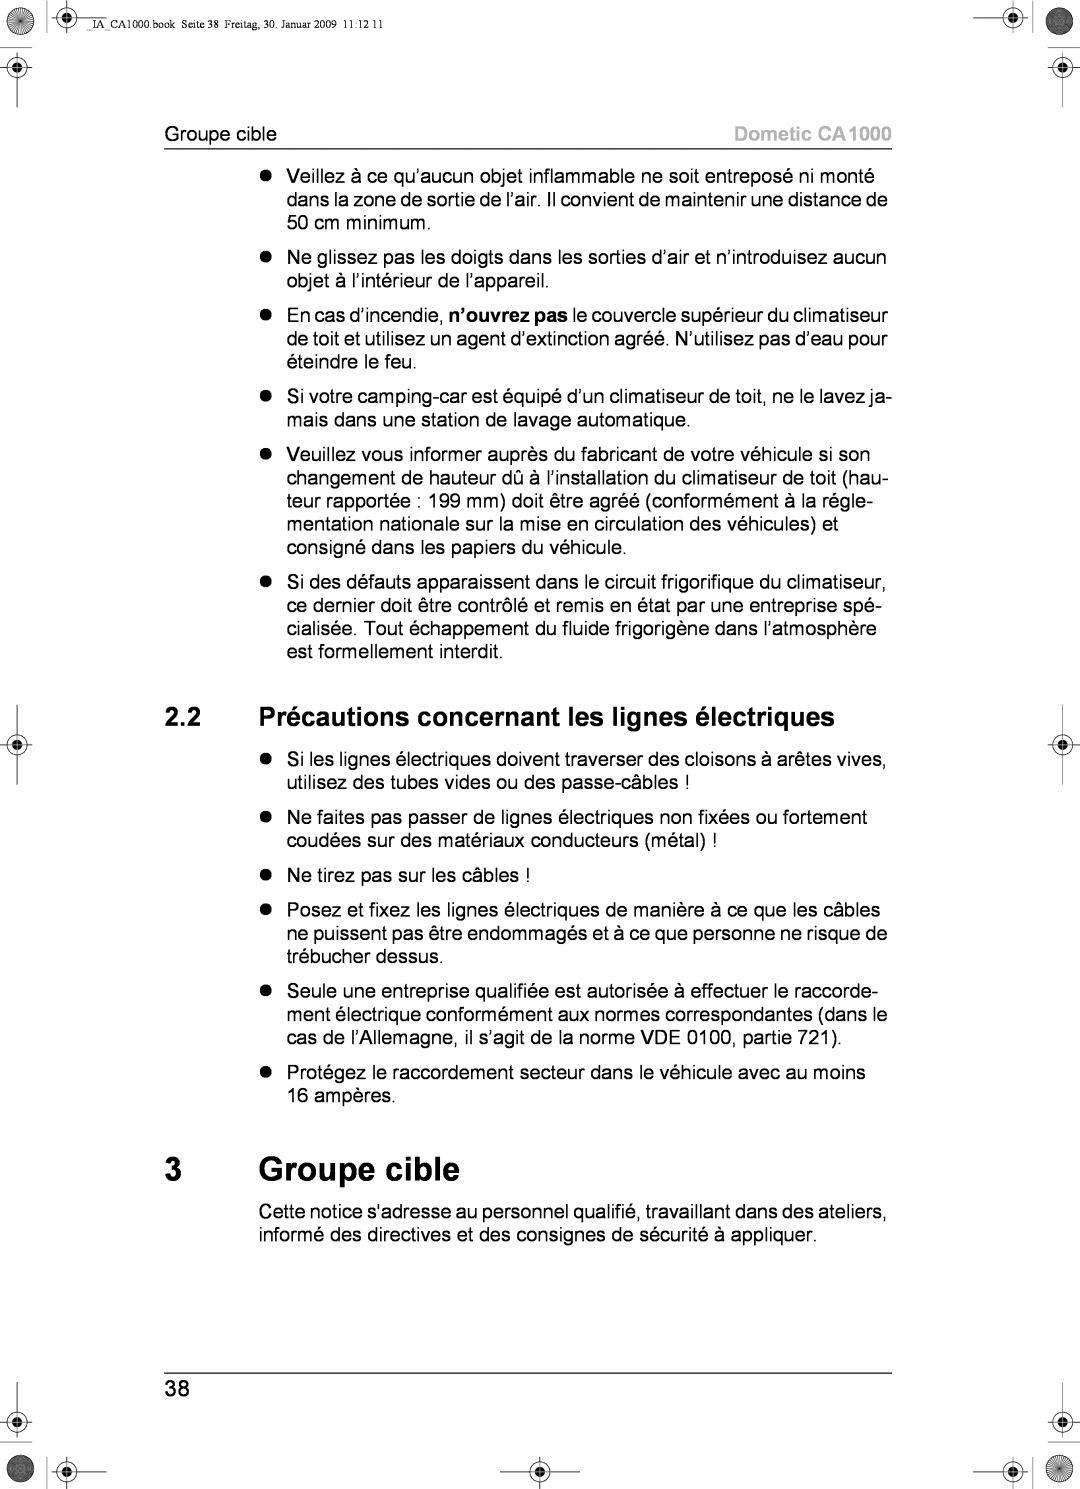 Dometic installation manual Groupe cible, 2.2Précautions concernant les lignes électriques, Dometic CA1000 